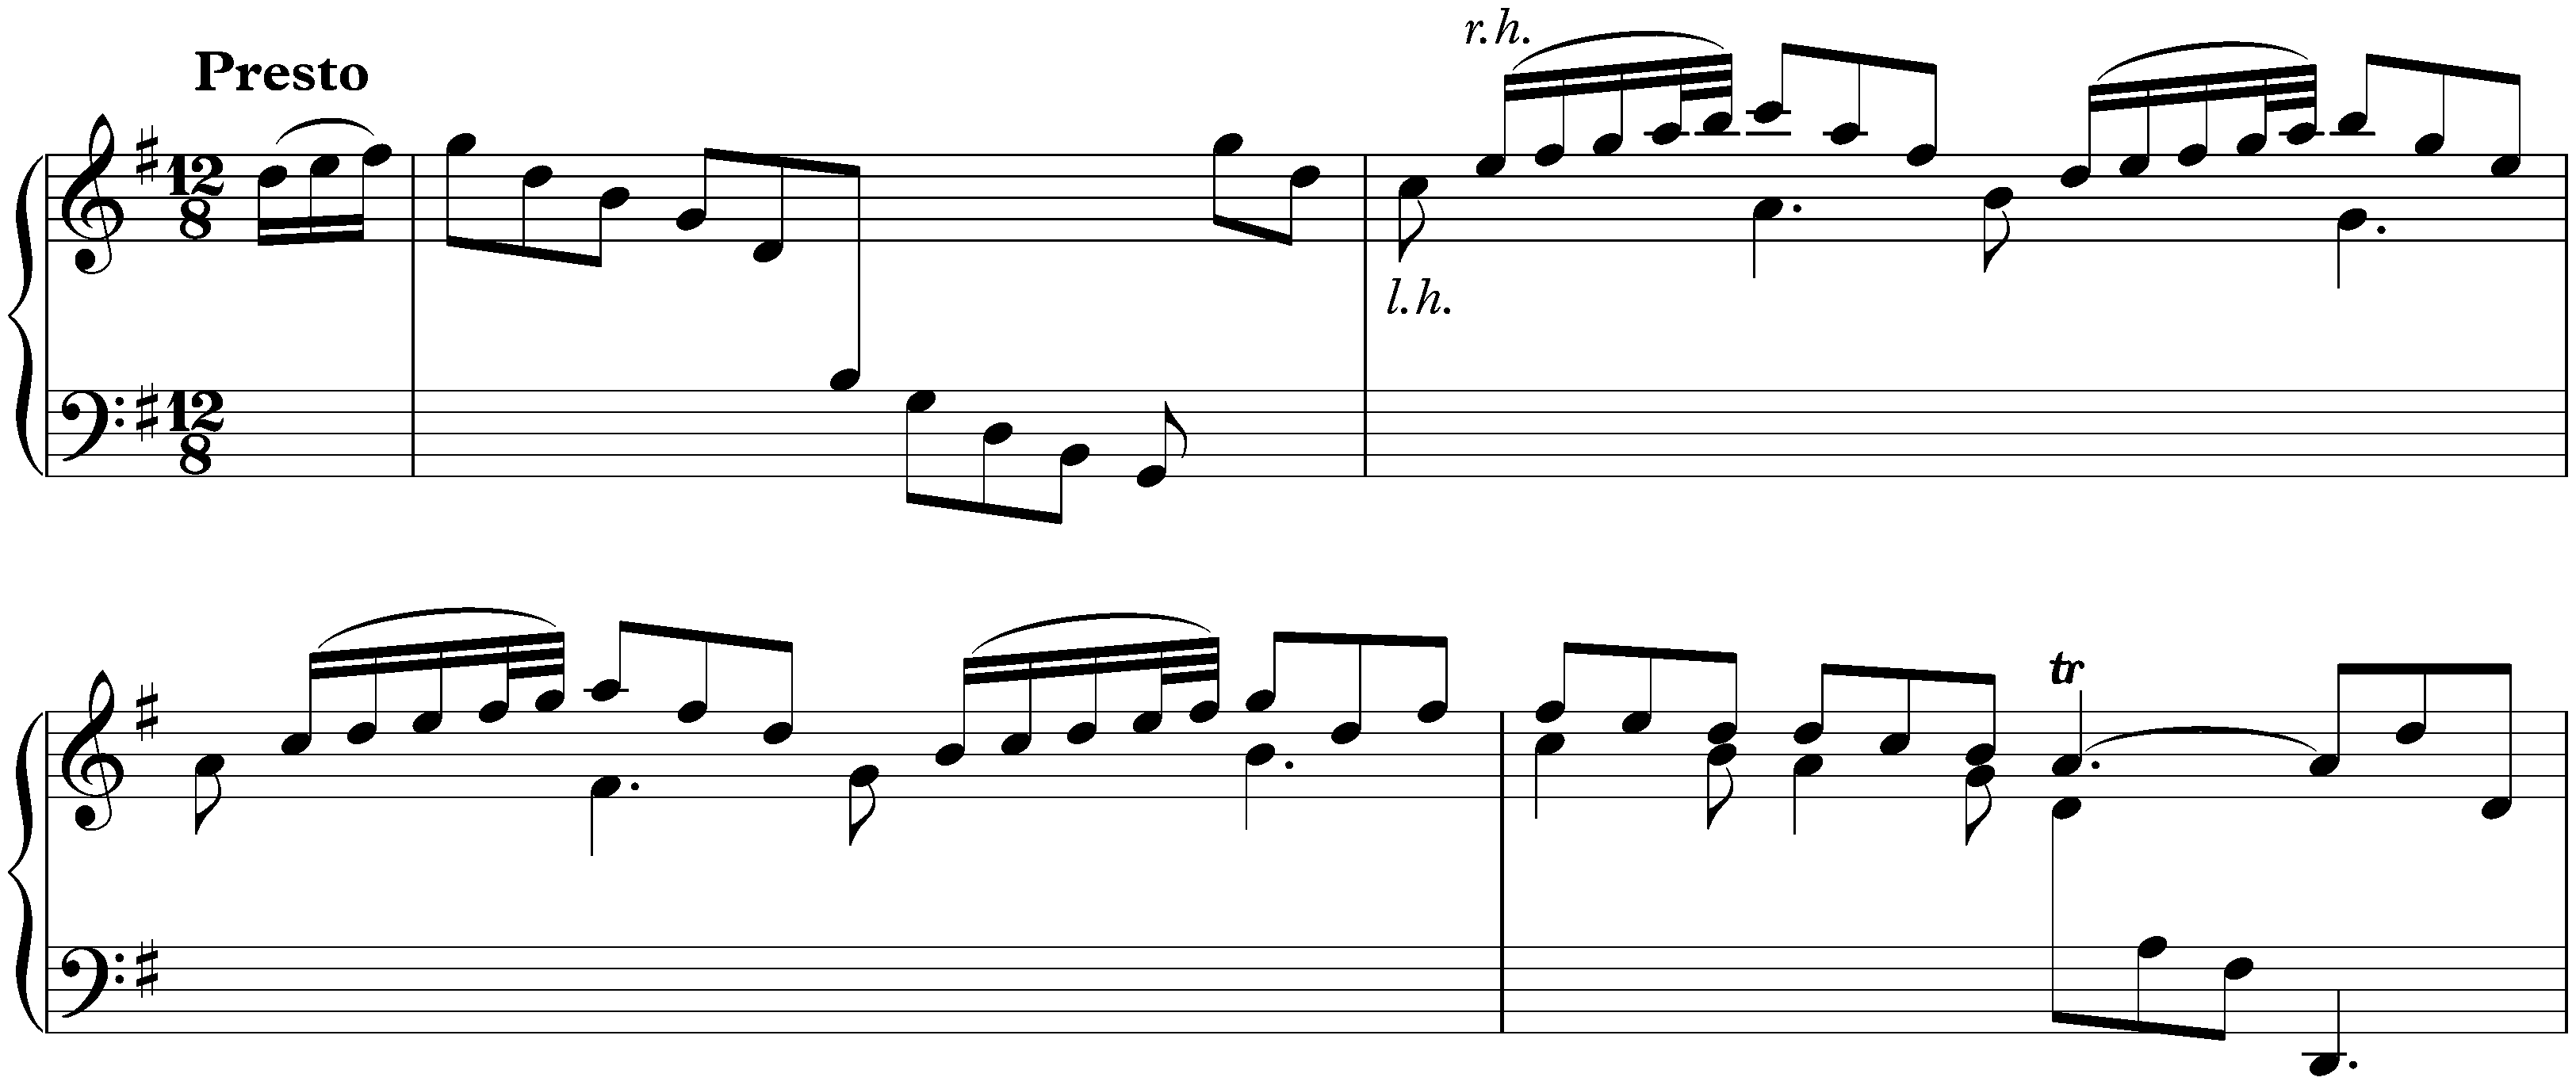 Sonata in G major, K. 14